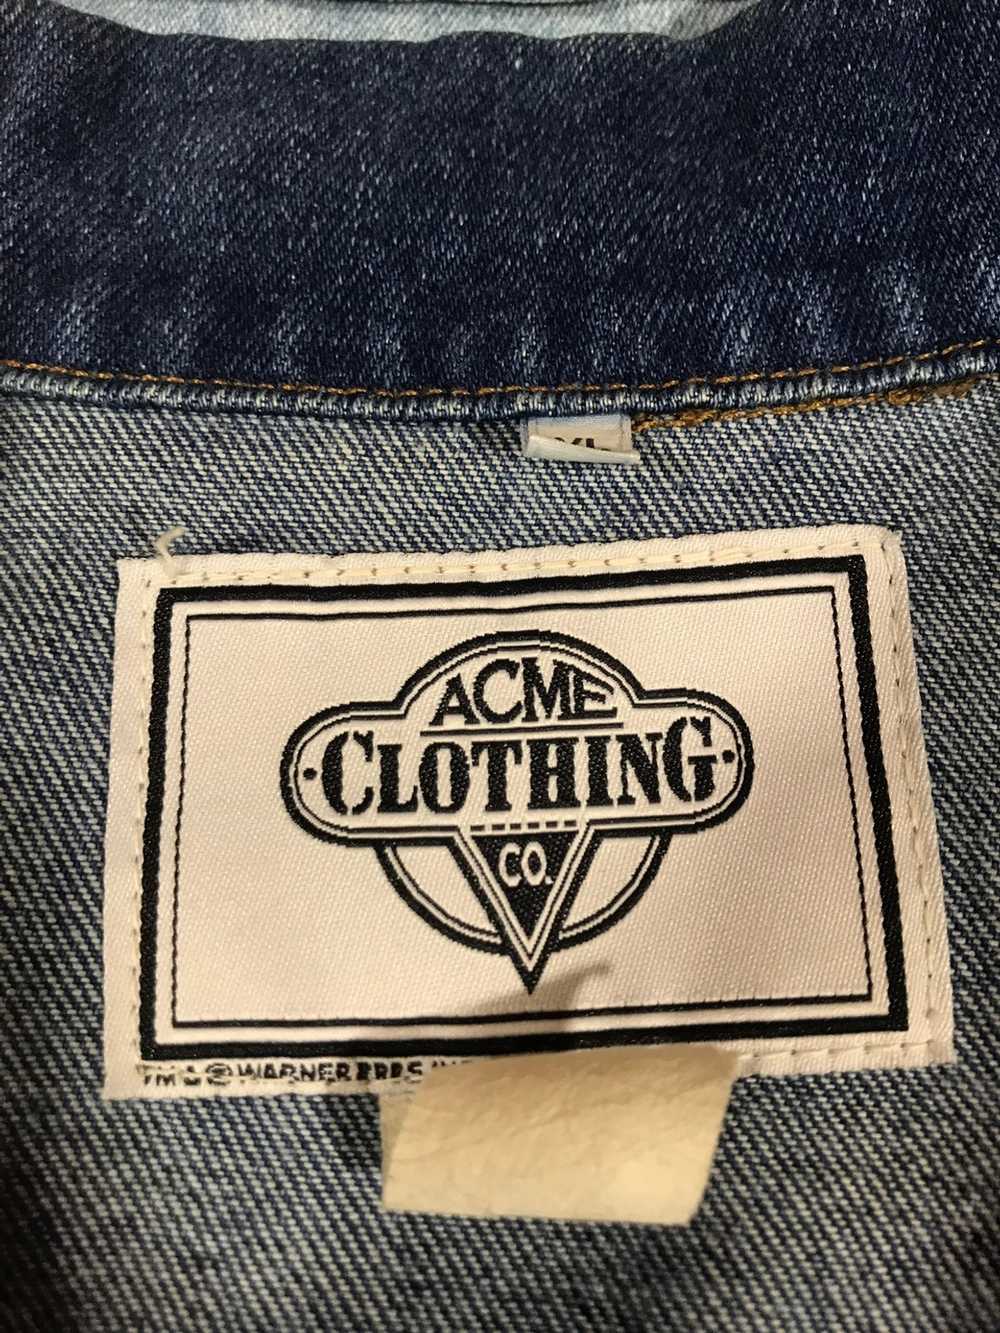 Acme Clothing Looney tunes vintage denim jacket - image 3